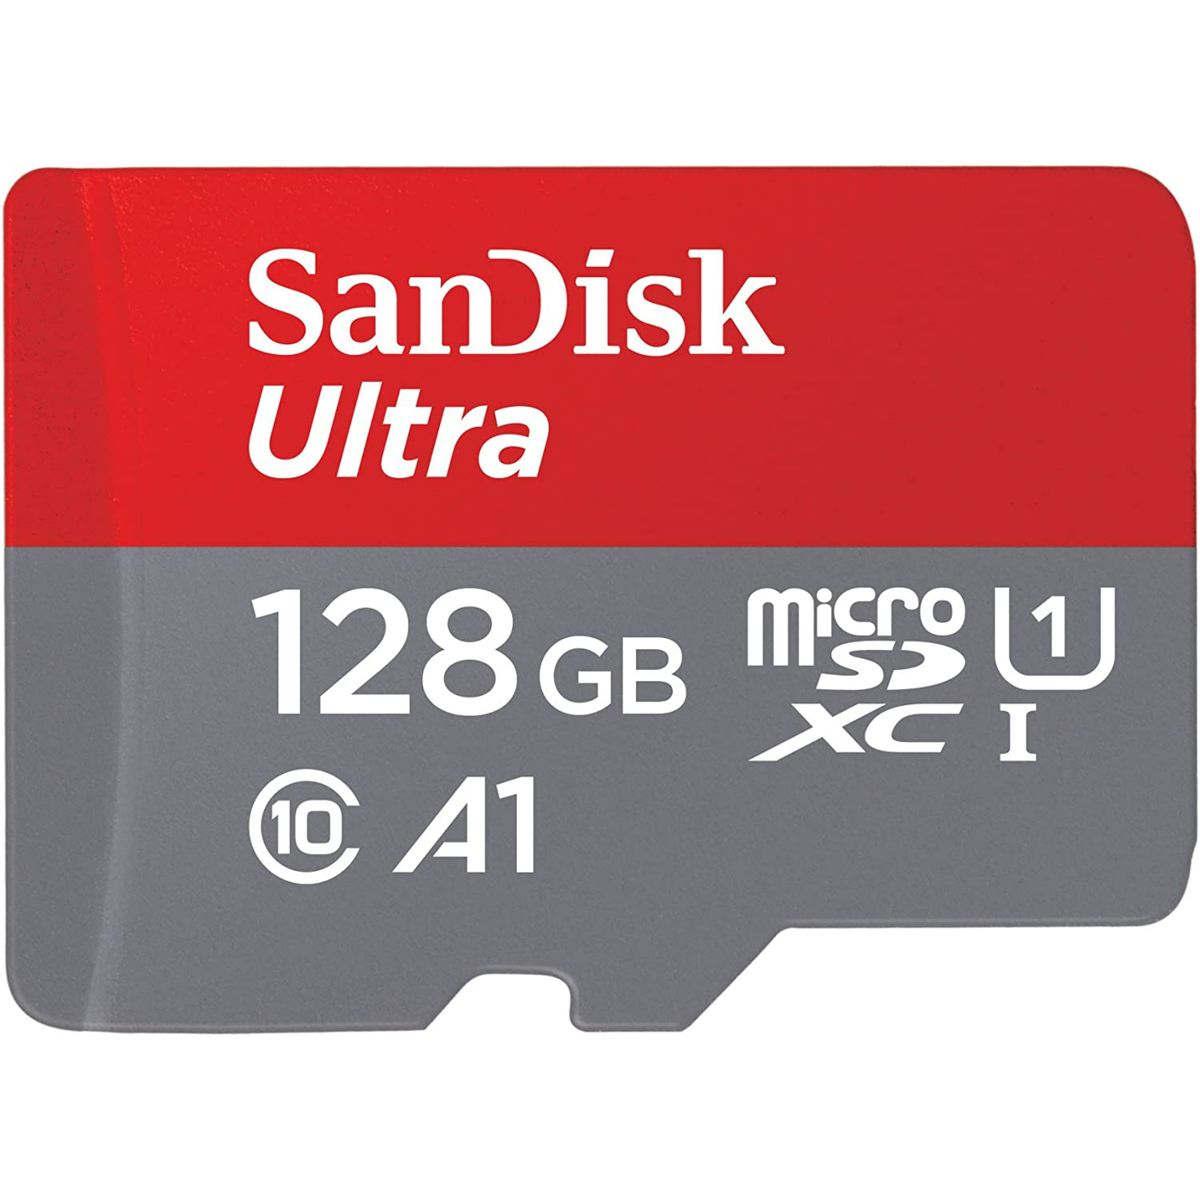 سان ديسك الترا بطاقة مايكرو اس دي UHS I، 128 جيجا، 140 ميجابايت/ثانية، رمادي/أحمر، SDSQUAB-128G-GN6MN